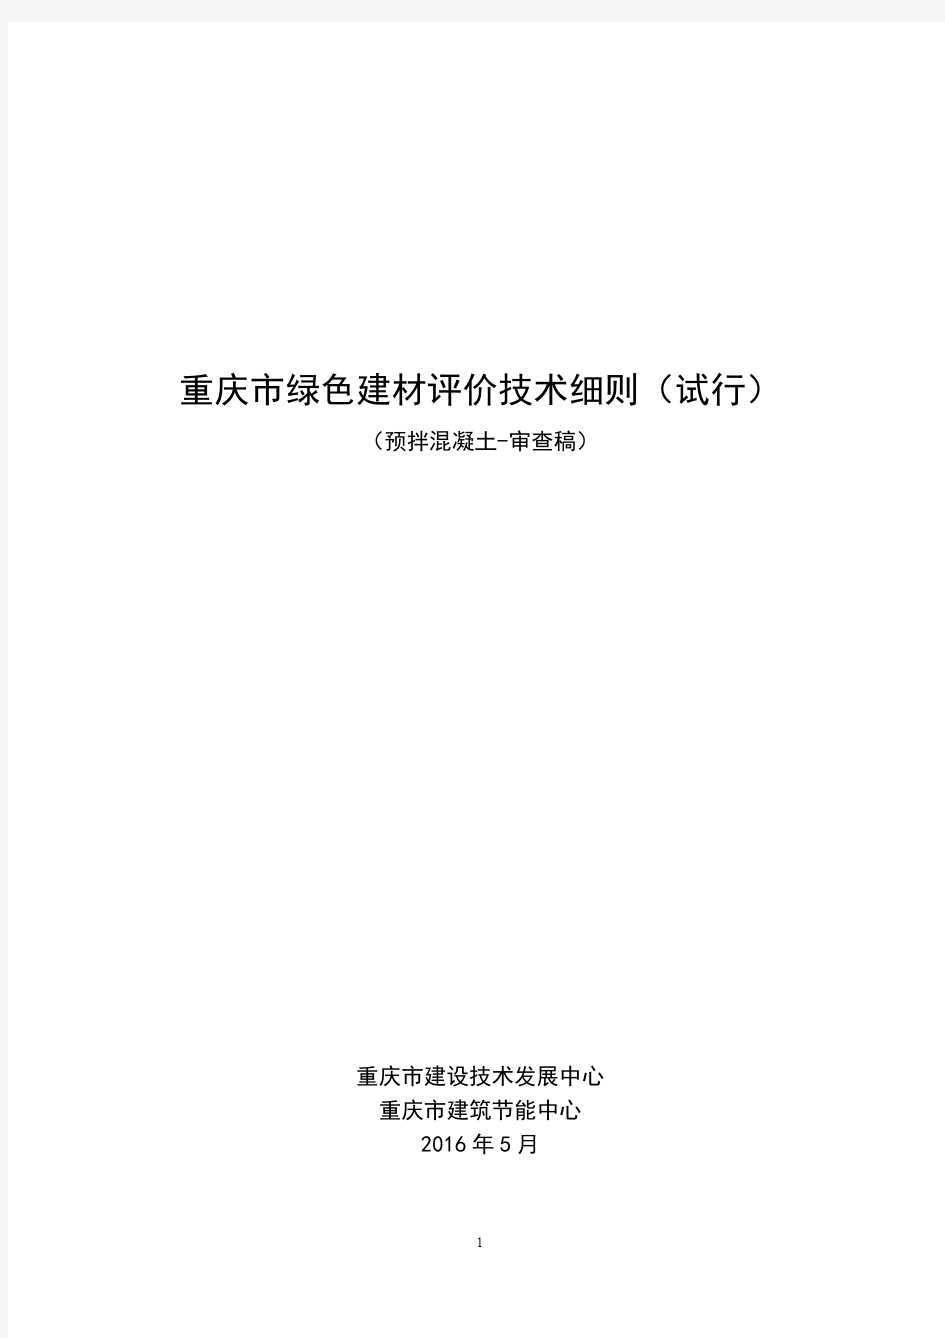 2、《重庆市绿色建材评价标识技术细则(试行)》(预拌混凝土)20160505